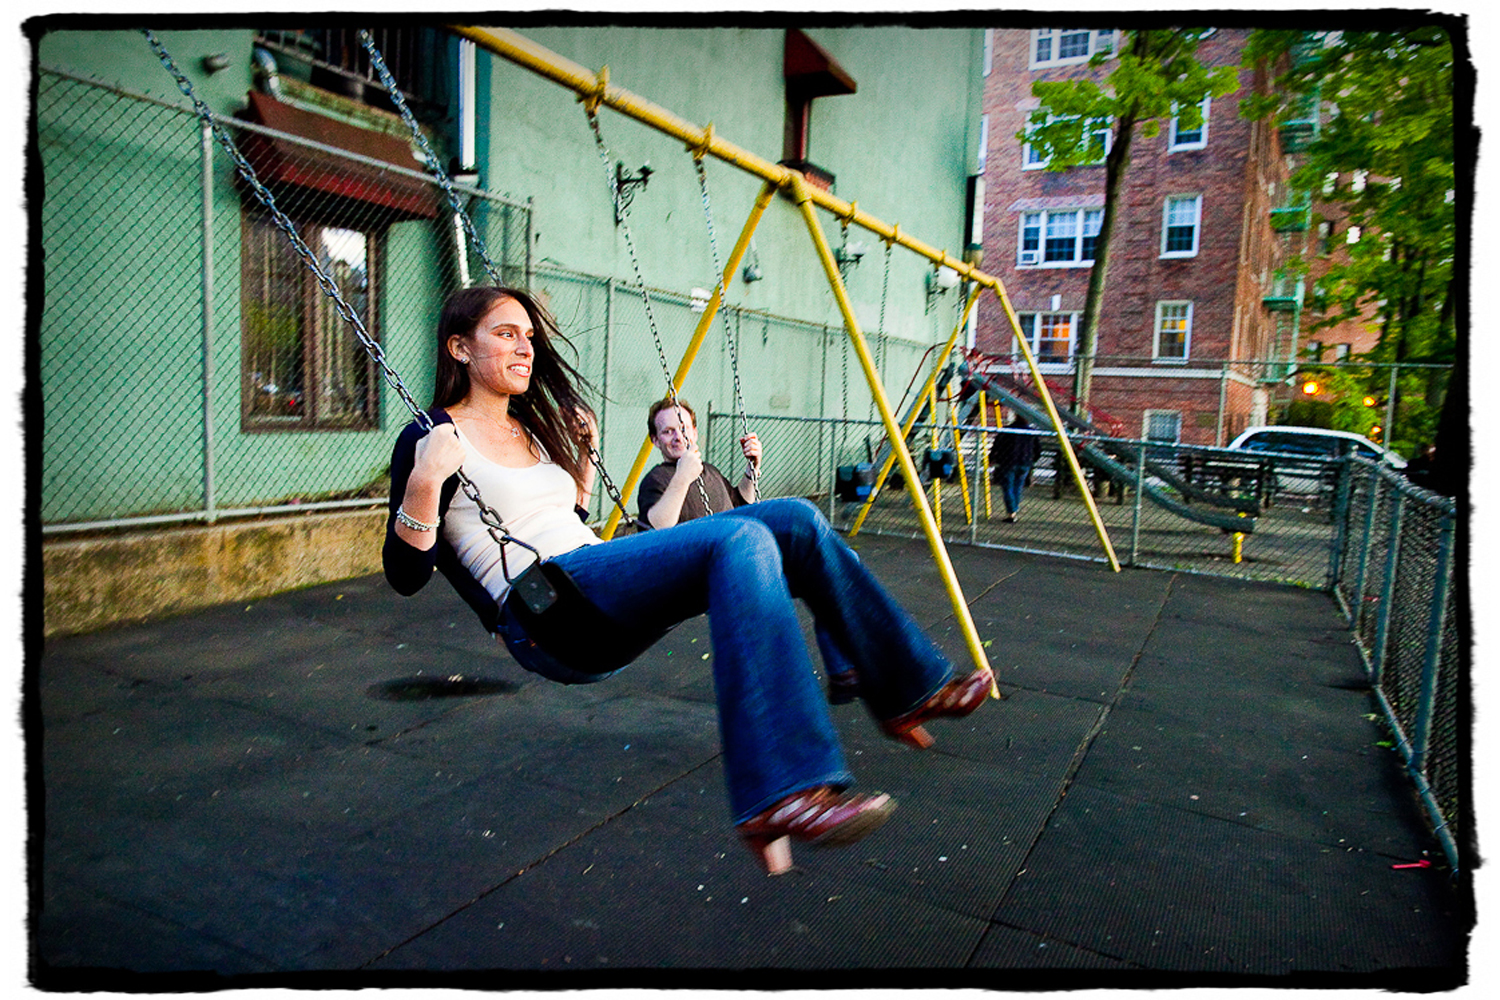 Engagement Portrait: Alex & Michelle goof around on a local playground in the West Village.